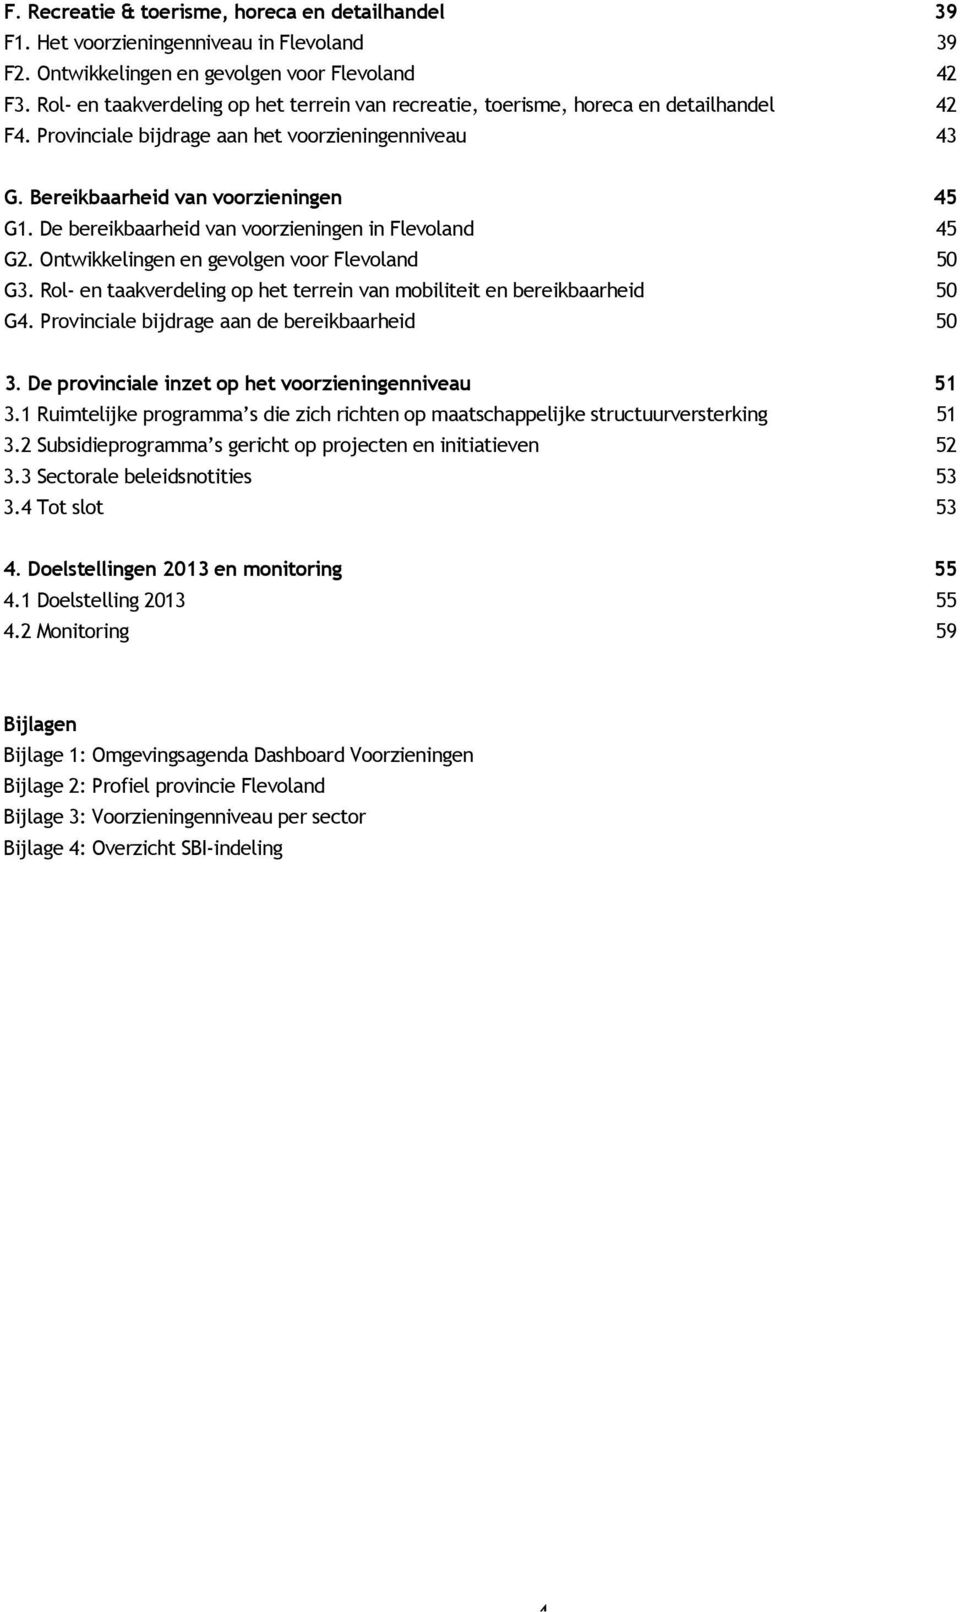 De bereikbaarheid van voorzieningen in Flevoland 45 G2. Ontwikkelingen en gevolgen voor Flevoland 50 G3. Rol- en taakverdeling op het terrein van mobiliteit en bereikbaarheid 50 G4.